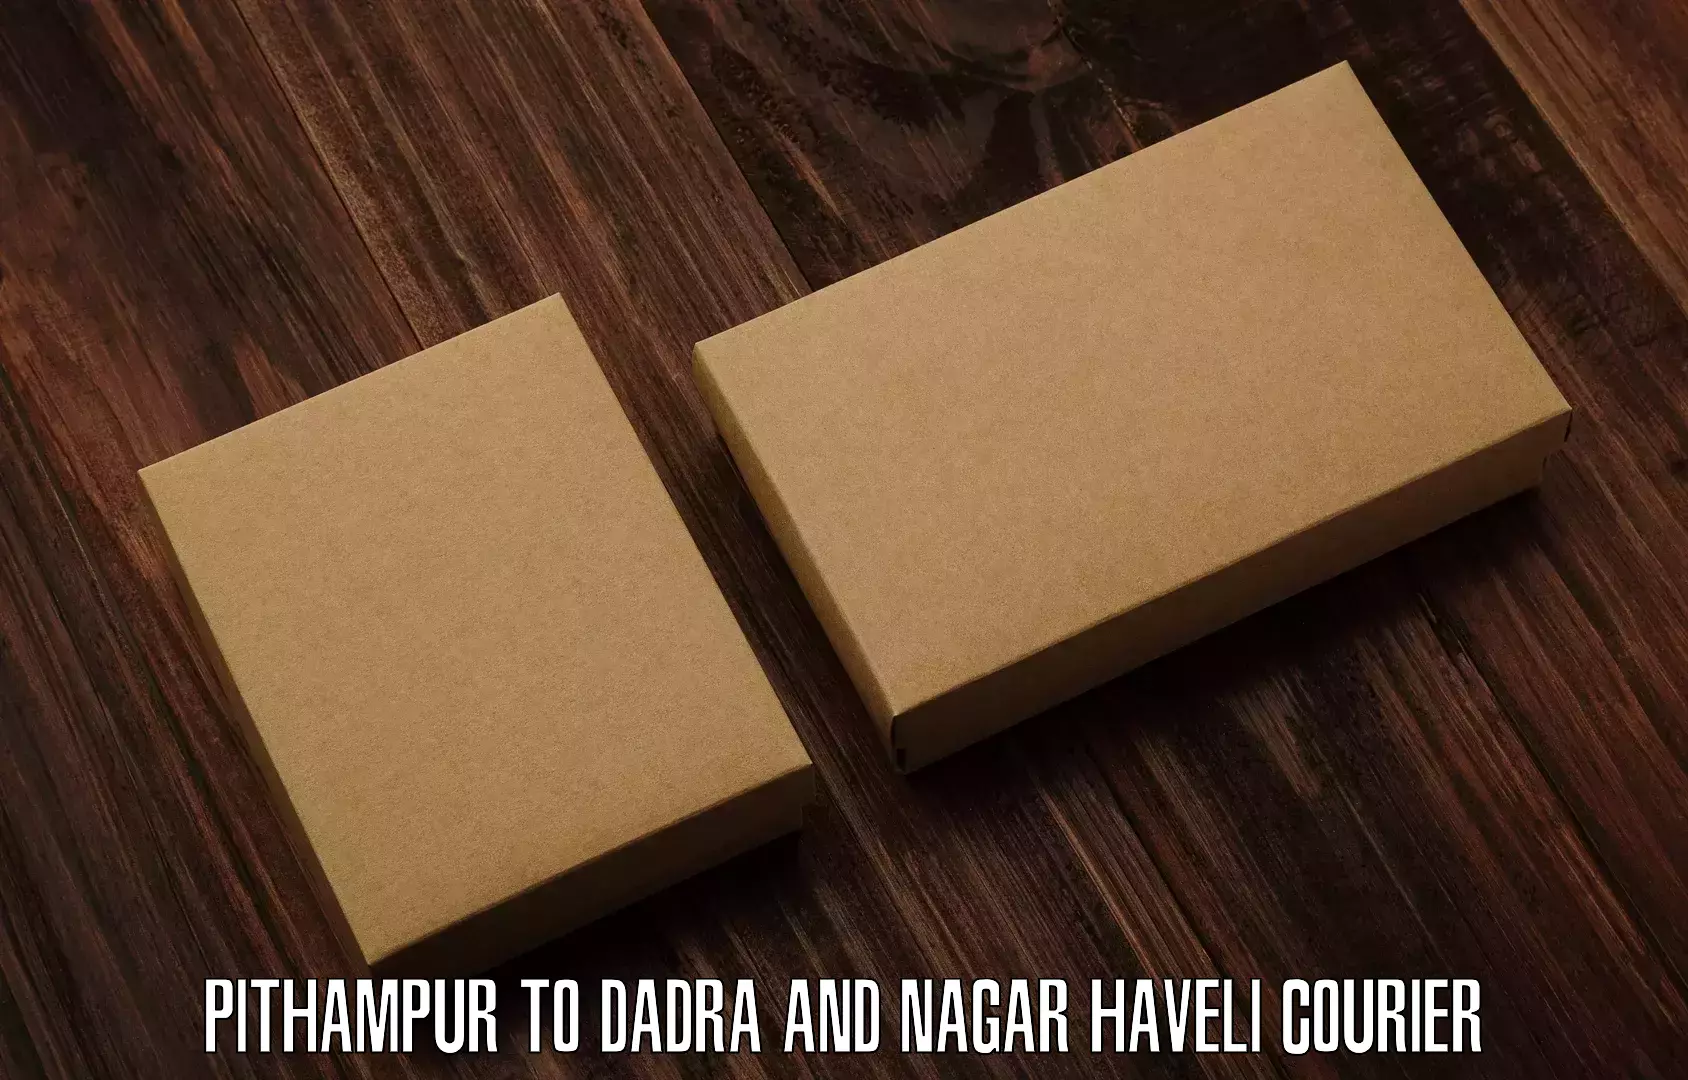 Express shipping Pithampur to Dadra and Nagar Haveli